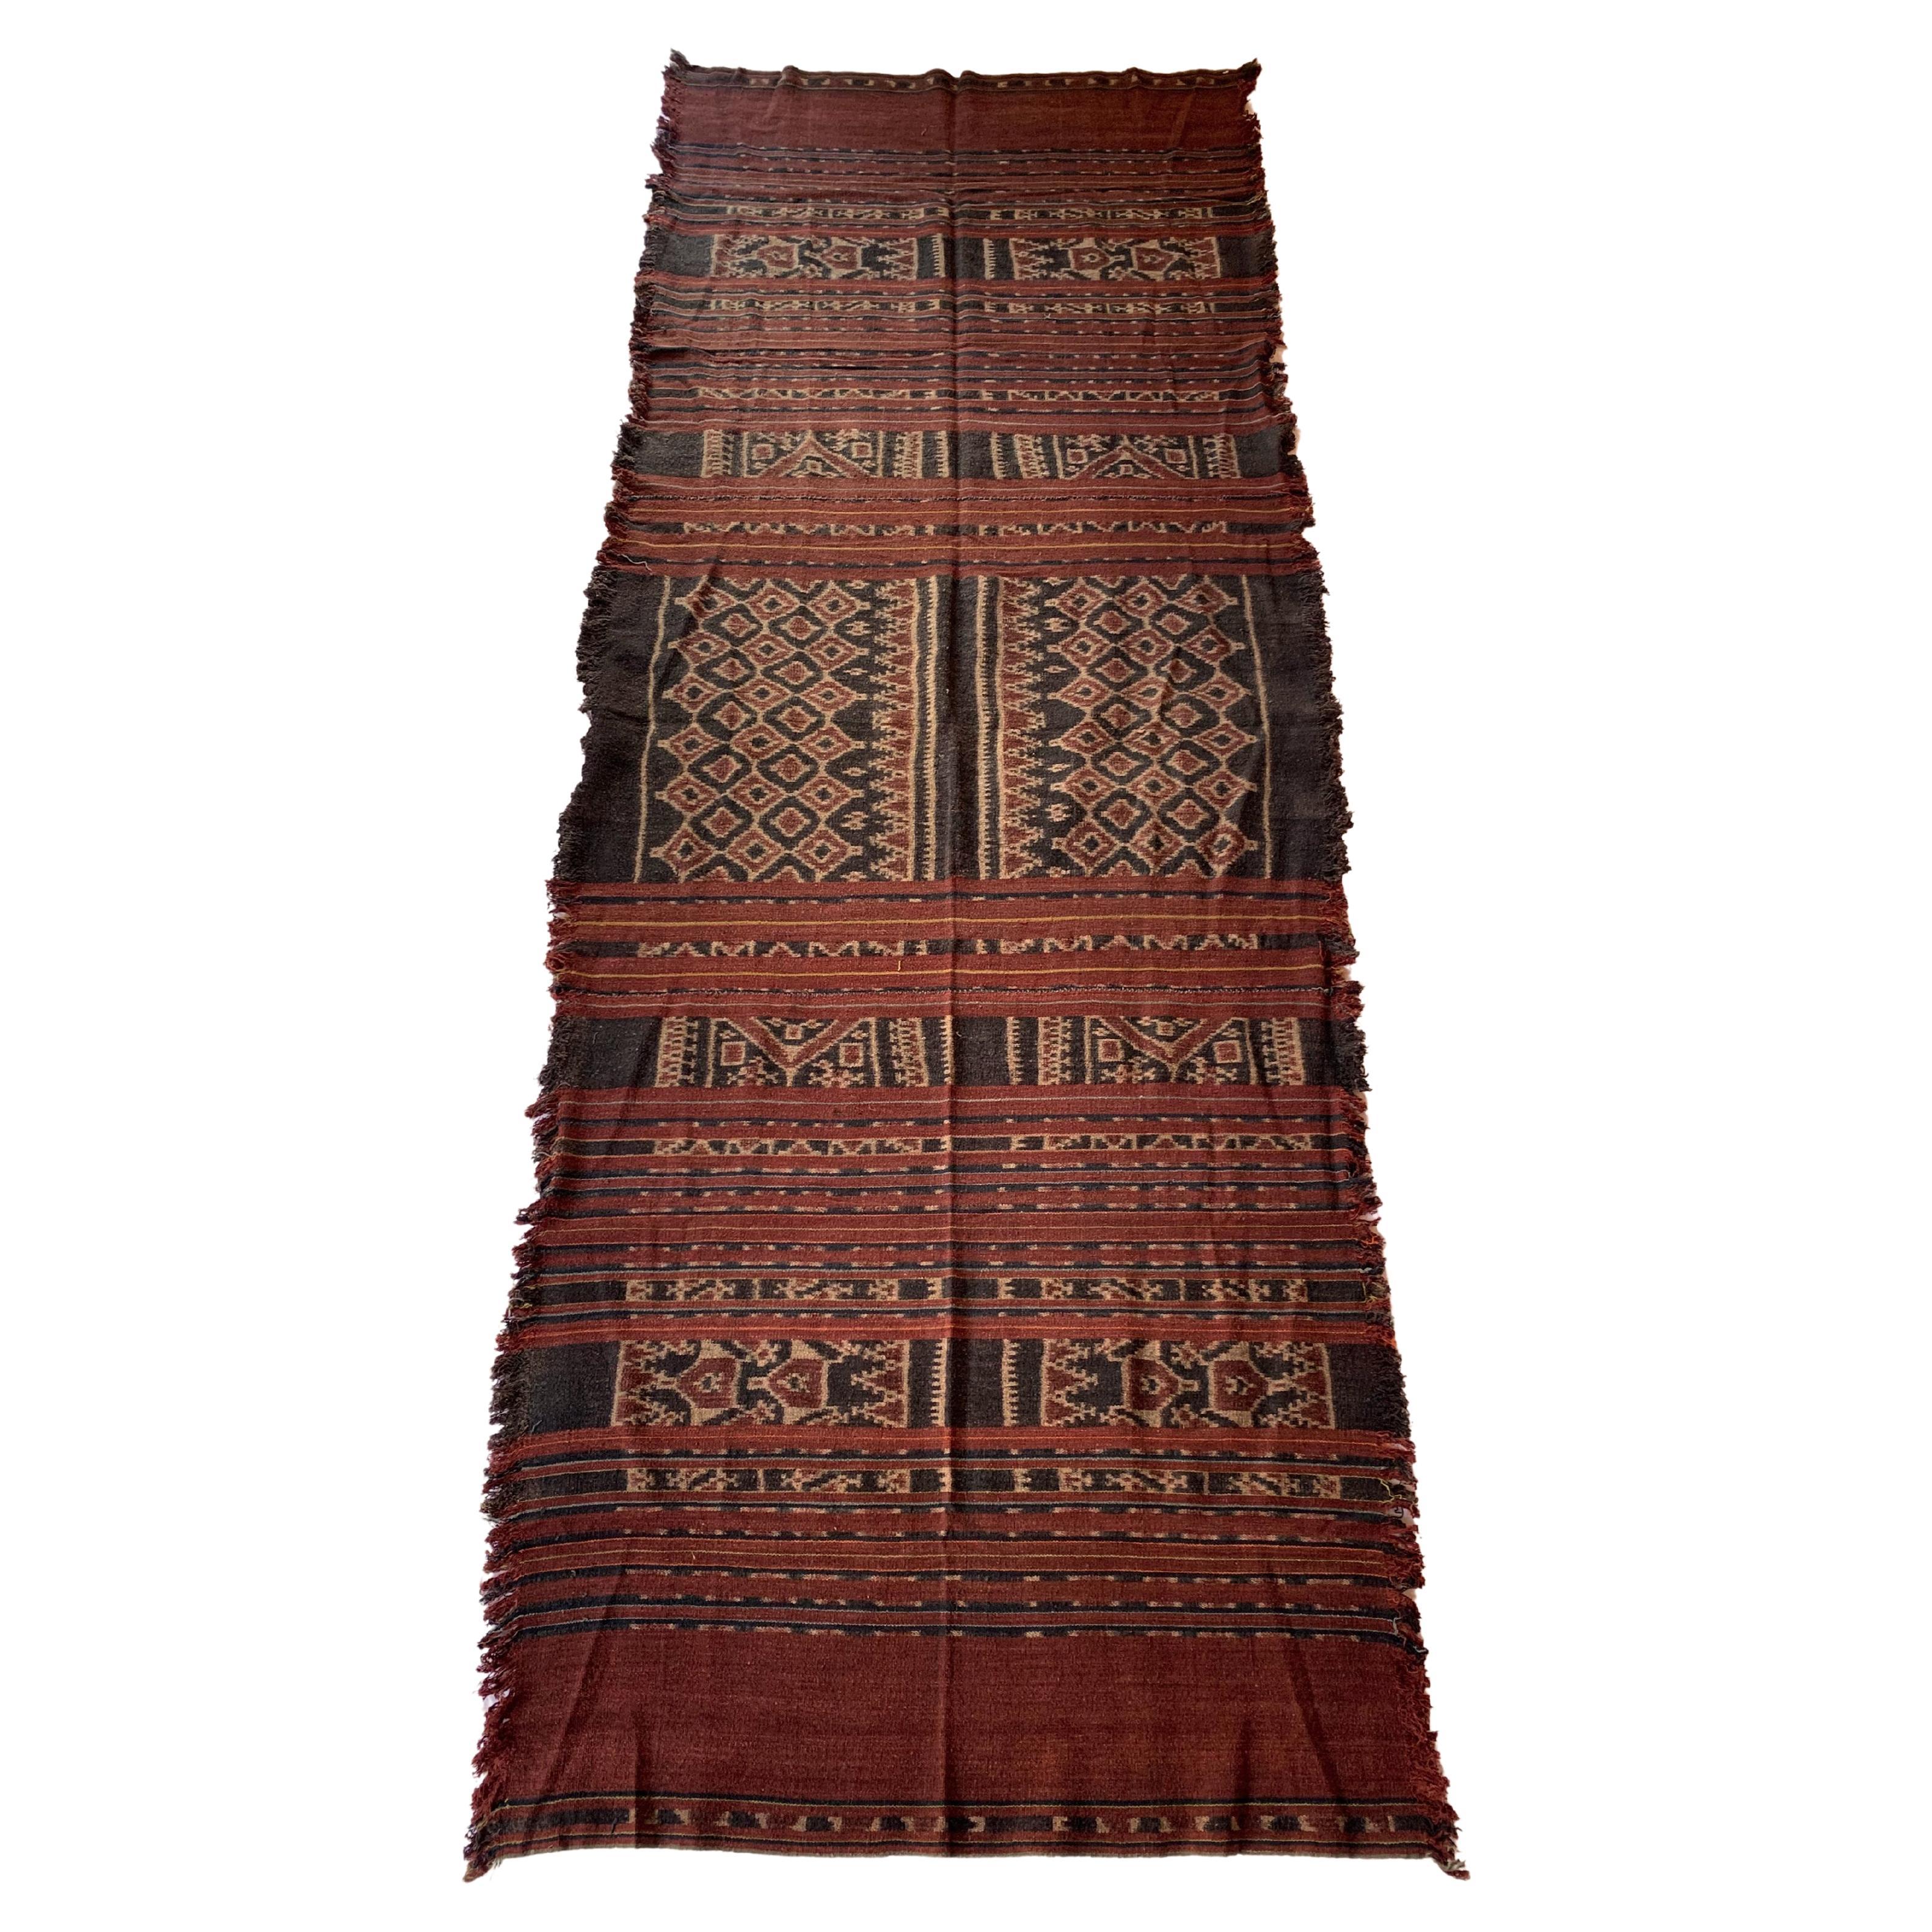 Textile Ikat de la tribu Toraja du Indonésie avec d'étonnants motifs tribaux, vers 1920